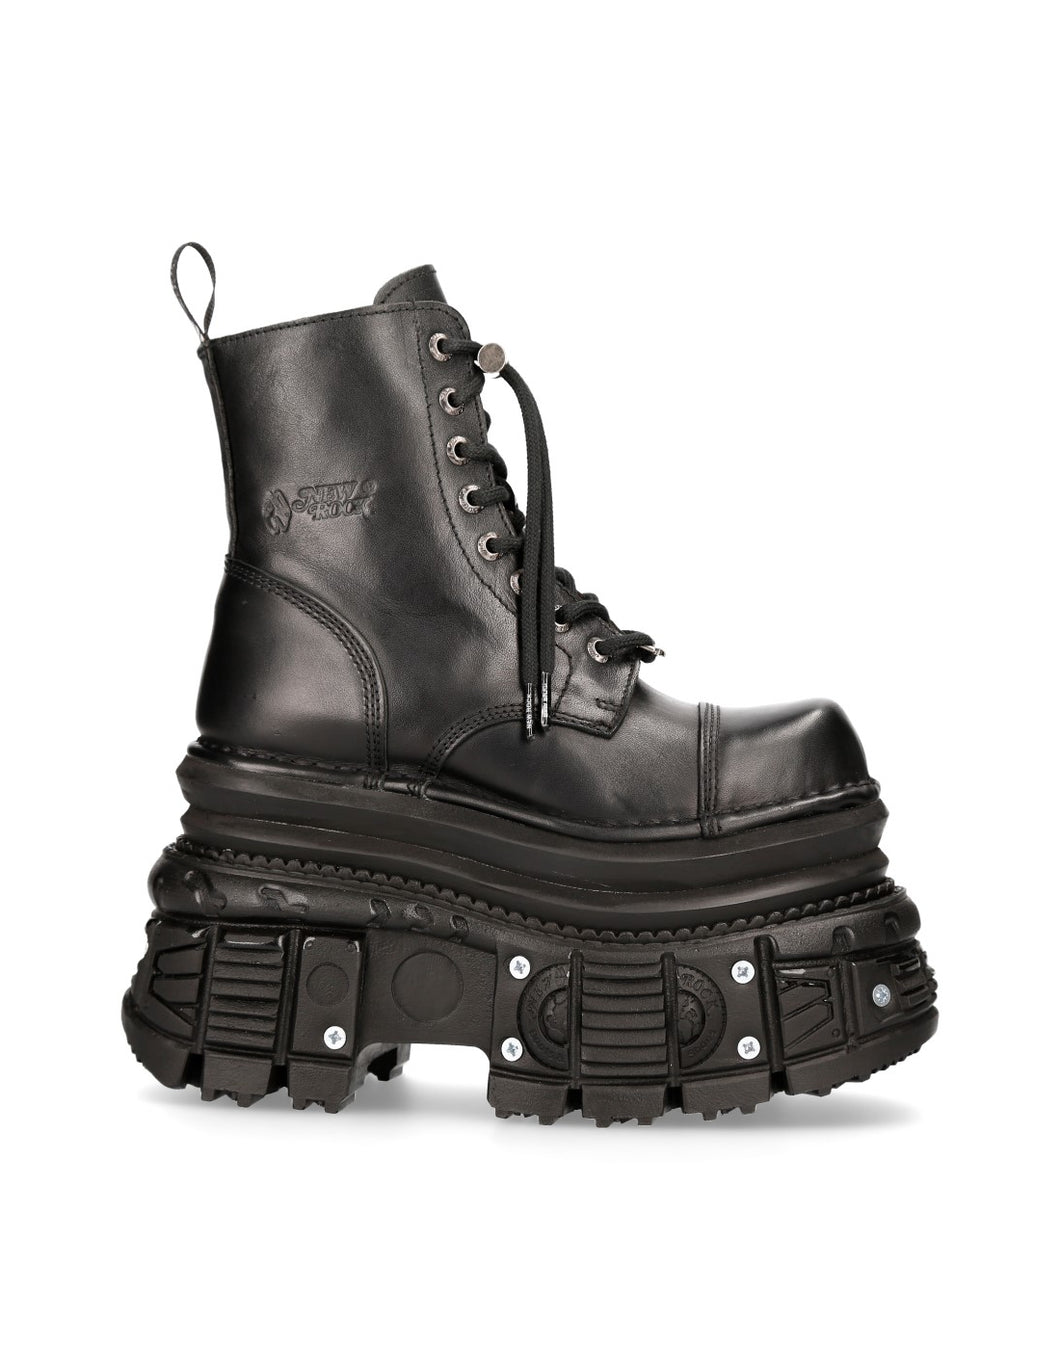 New Rock Shoes Boots Stiefel M-MILI083CCT-C4 Gothic Tank Collection Black Echtleder